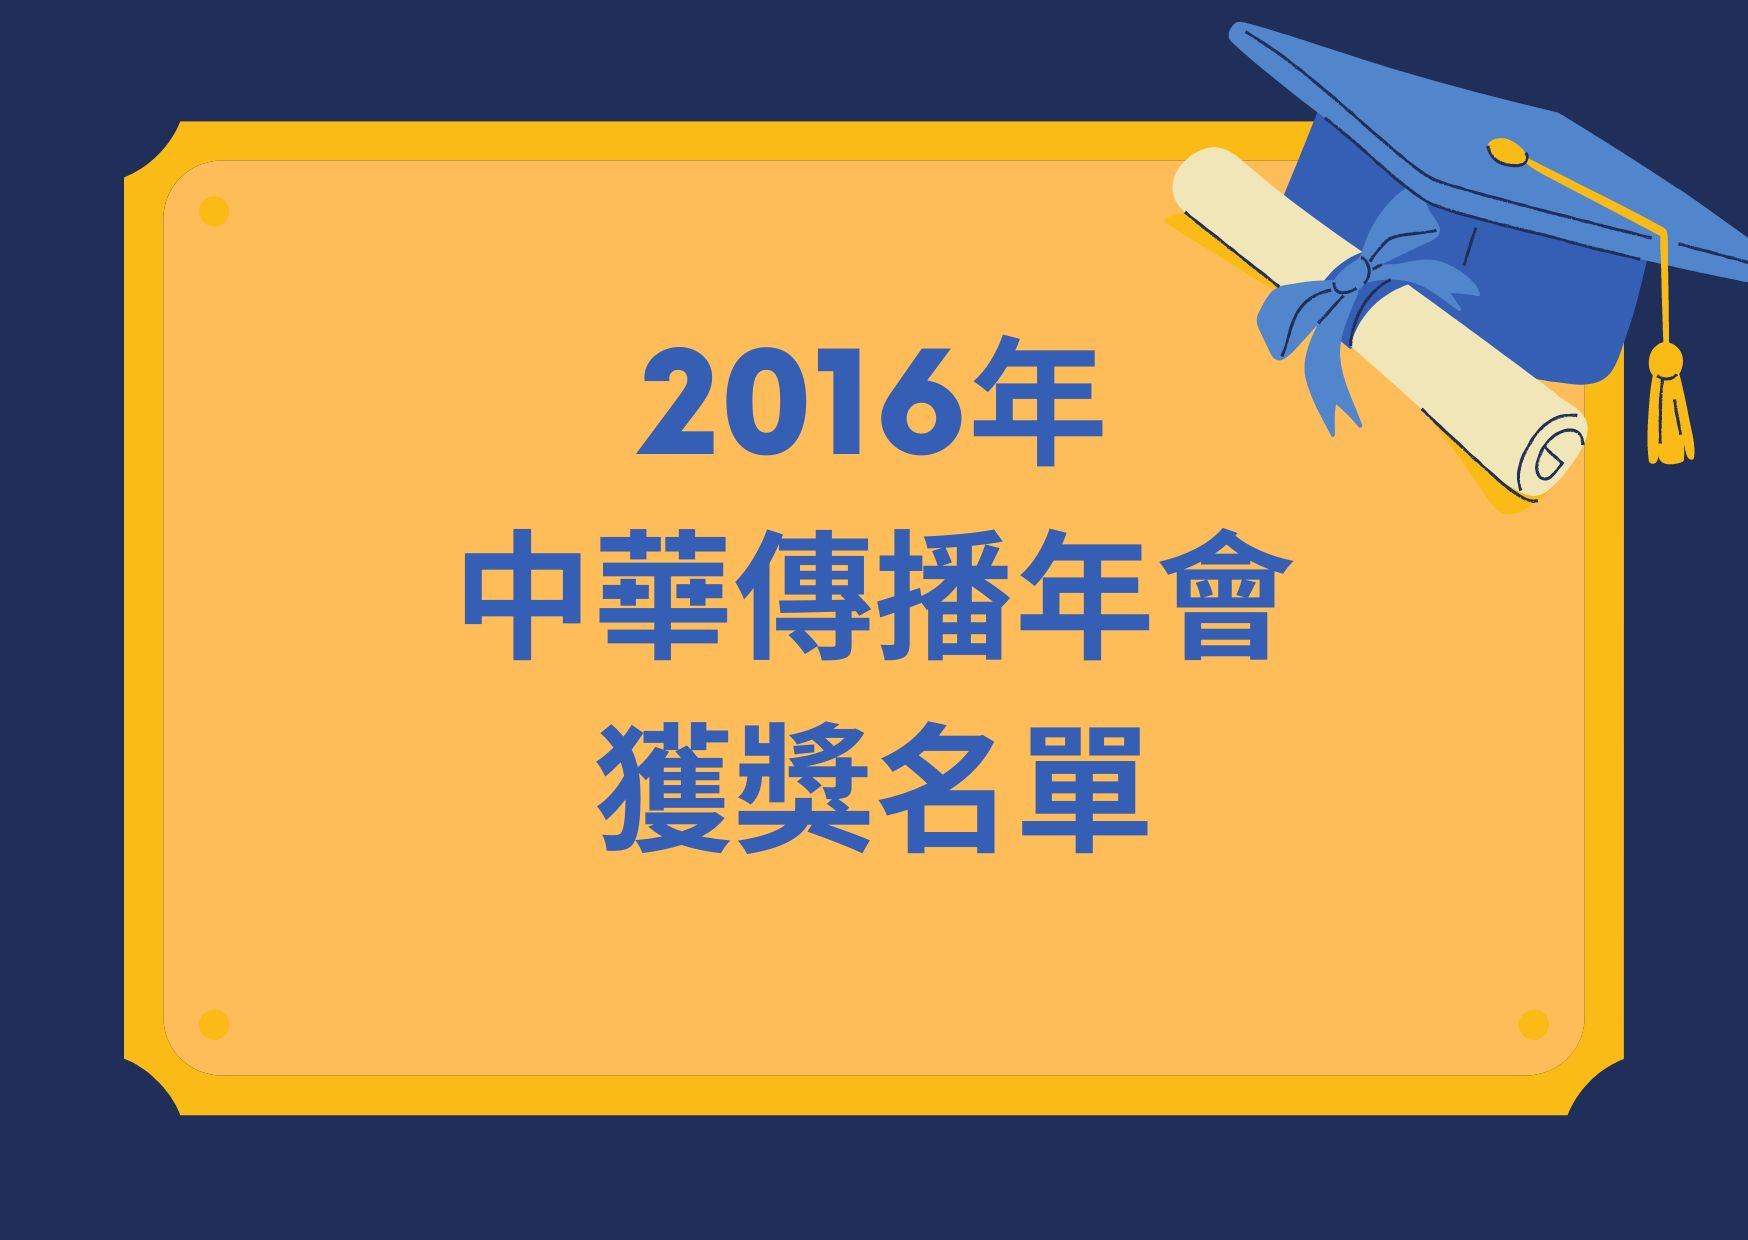 2016年中華傳播年會獲獎名單